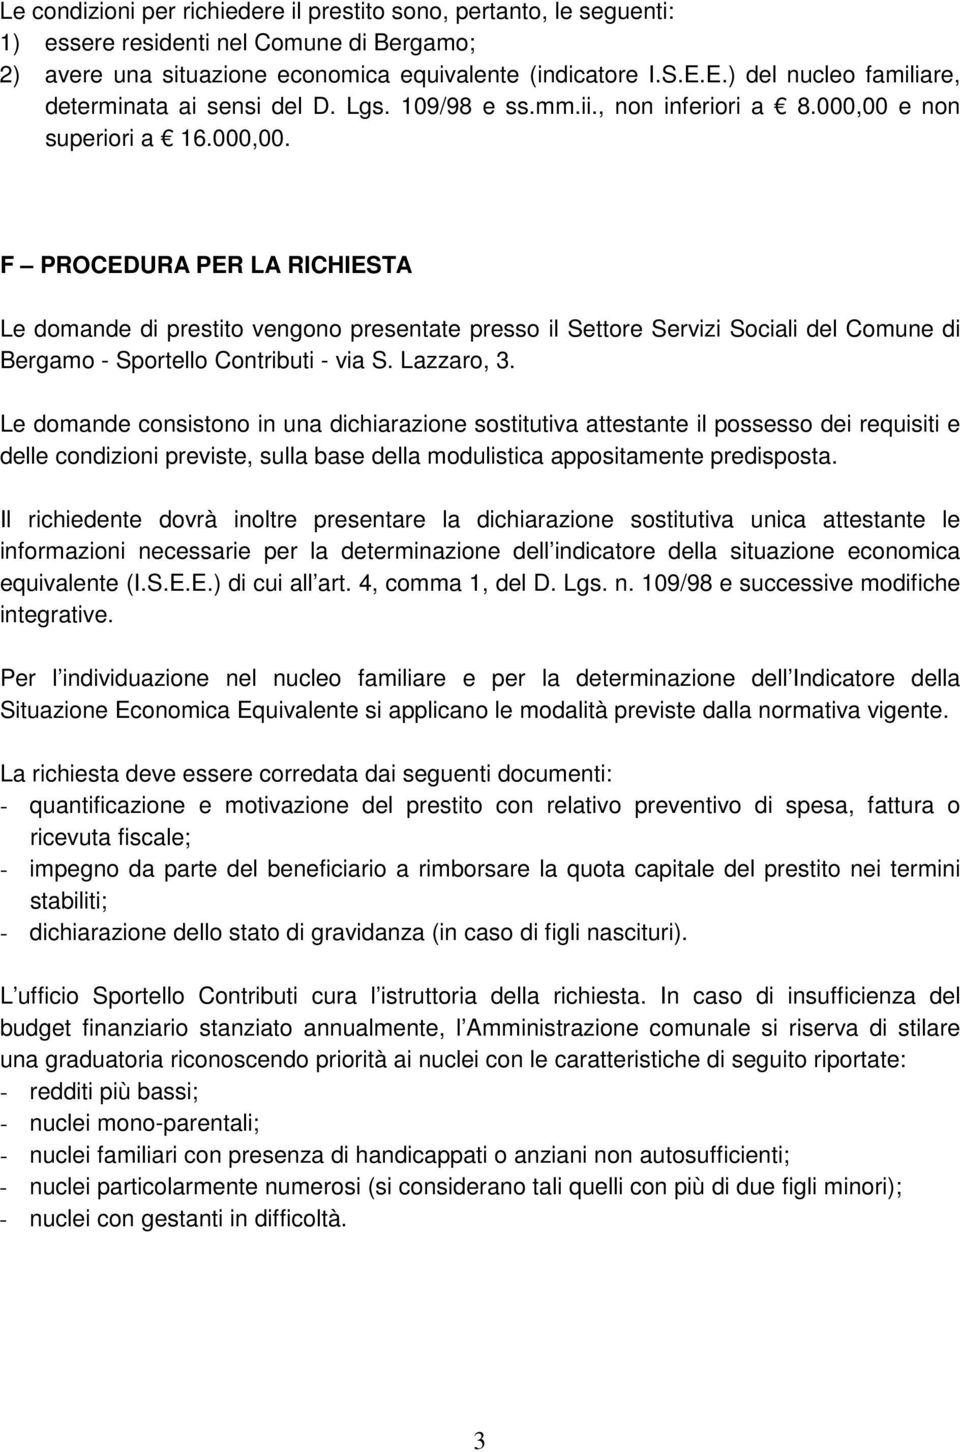 e non superiori a 16.000,00. F PROCEDURA PER LA RICHIESTA Le domande di prestito vengono presentate presso il Settore Servizi Sociali del Comune di Bergamo - Sportello Contributi - via S. Lazzaro, 3.